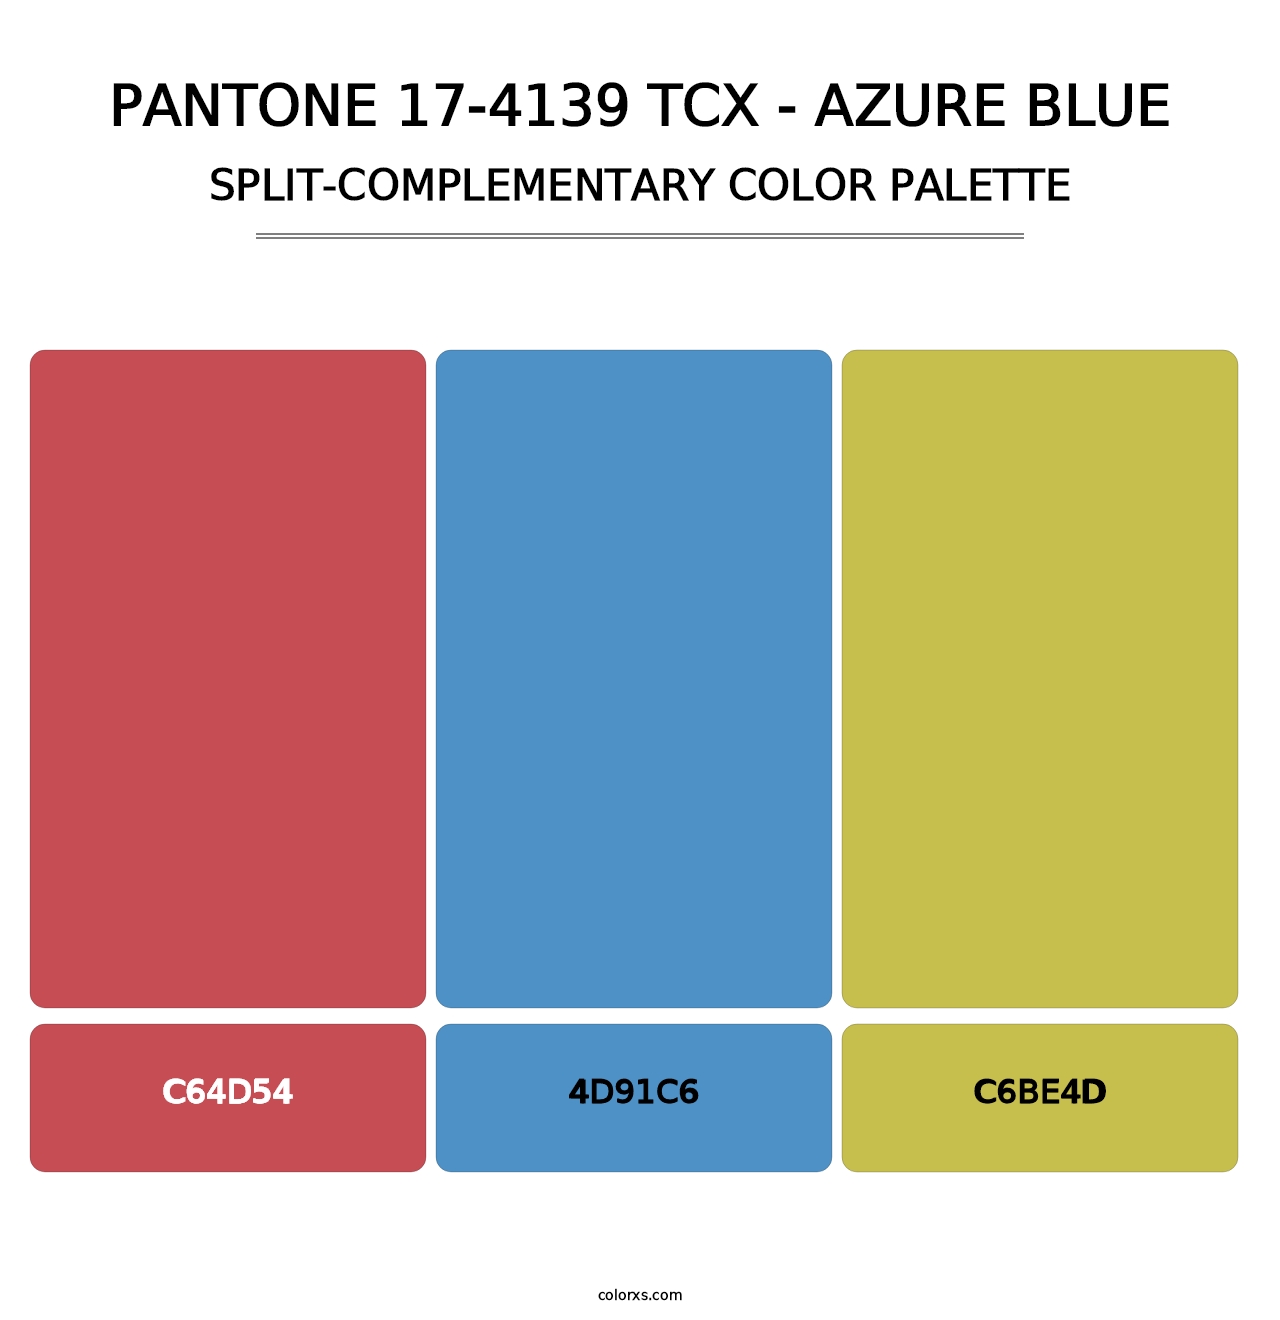 PANTONE 17-4139 TCX - Azure Blue - Split-Complementary Color Palette